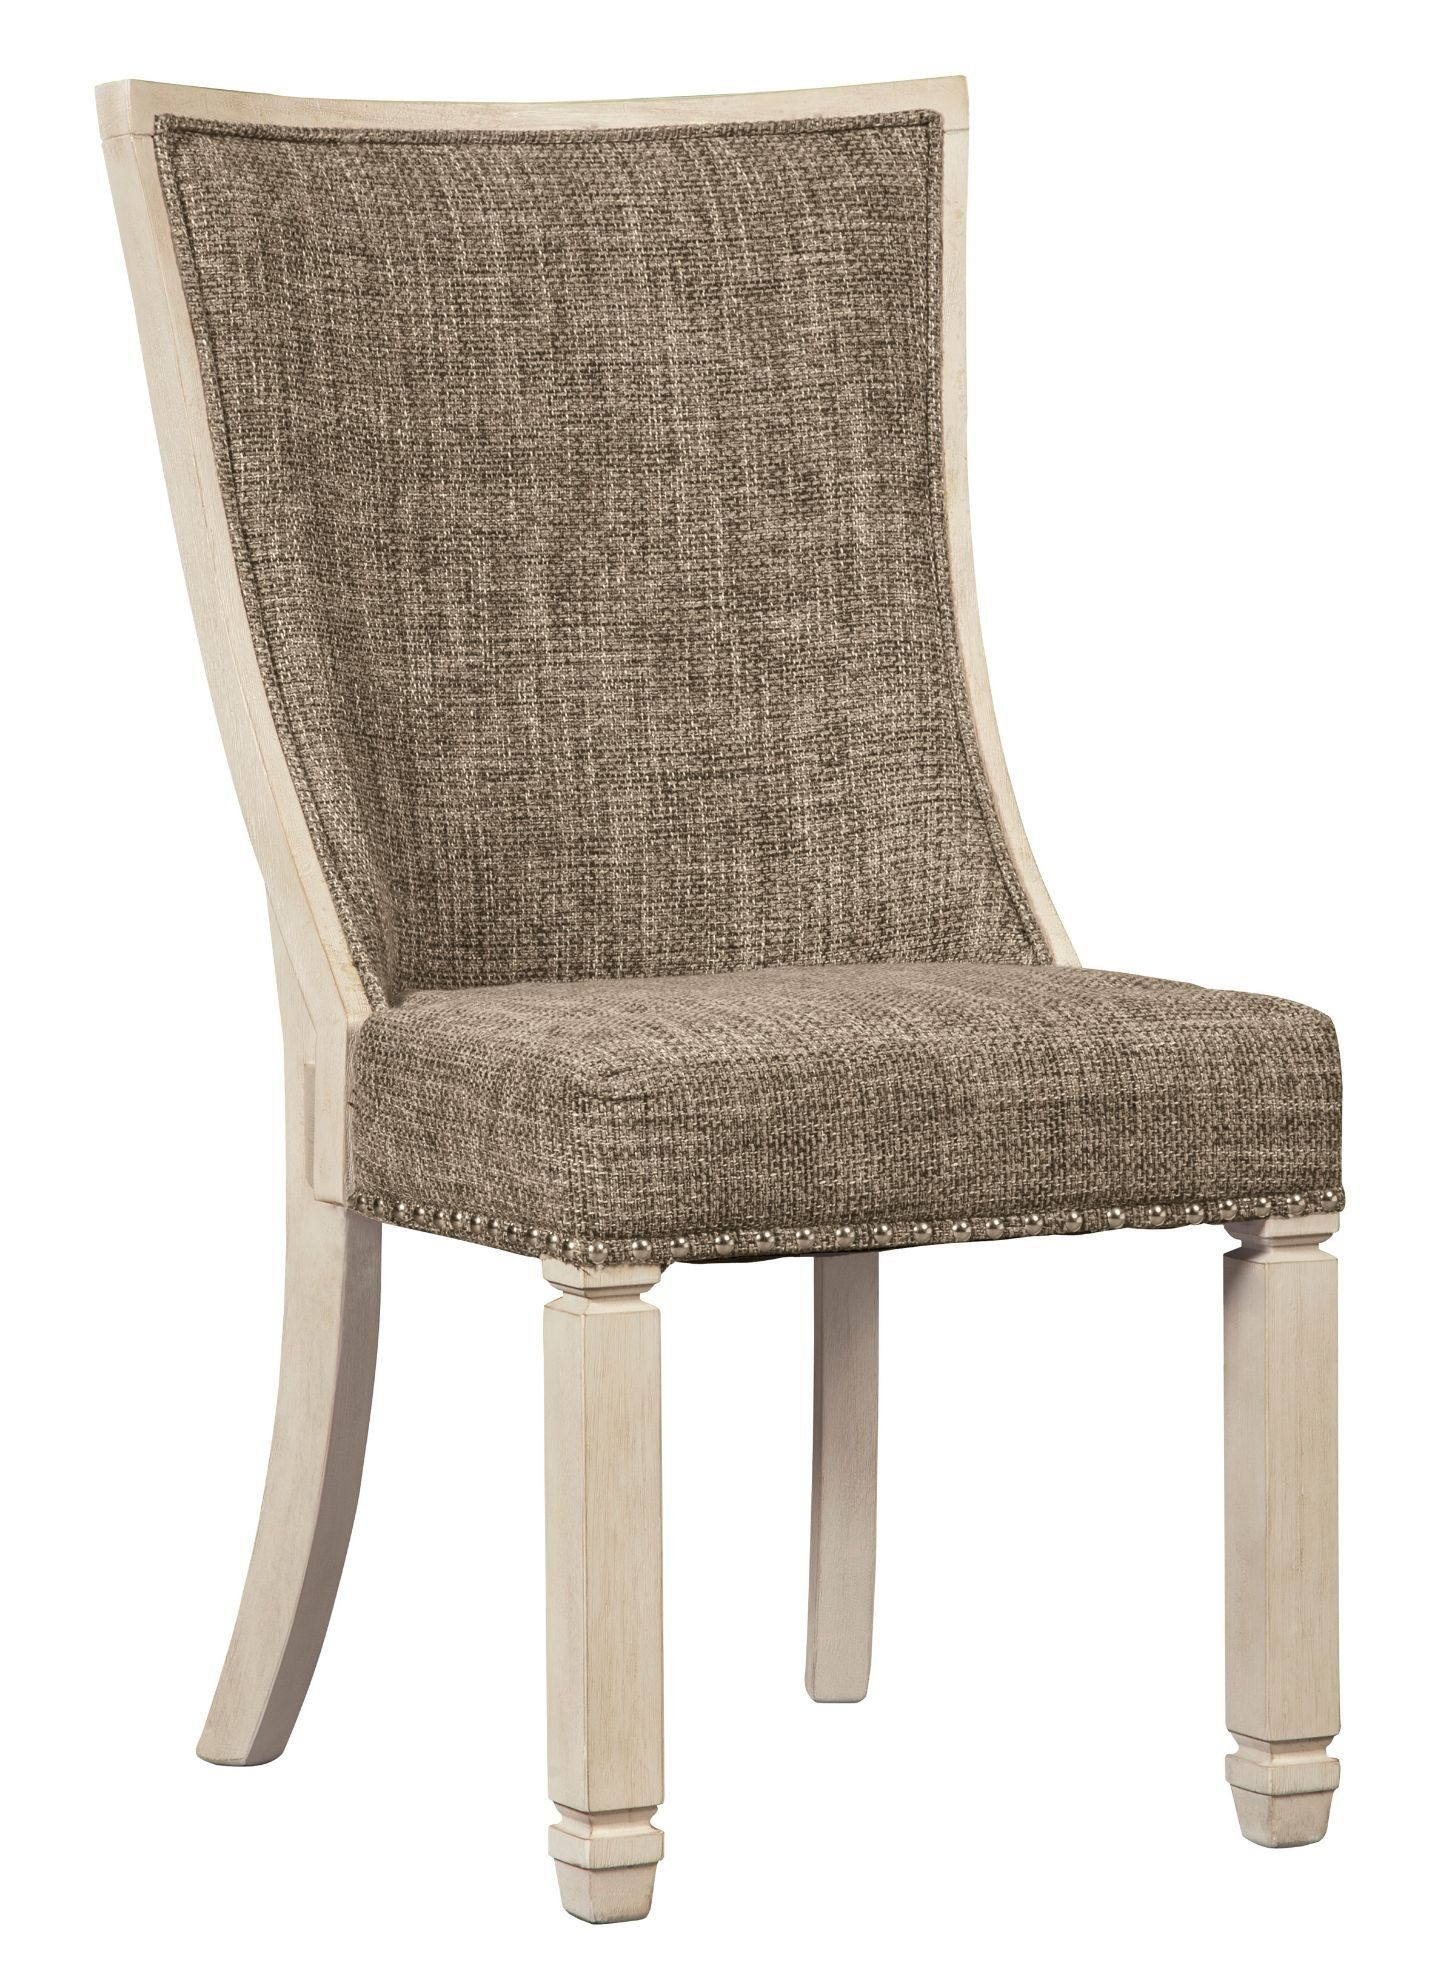 Bolanburg Upholstered Chair